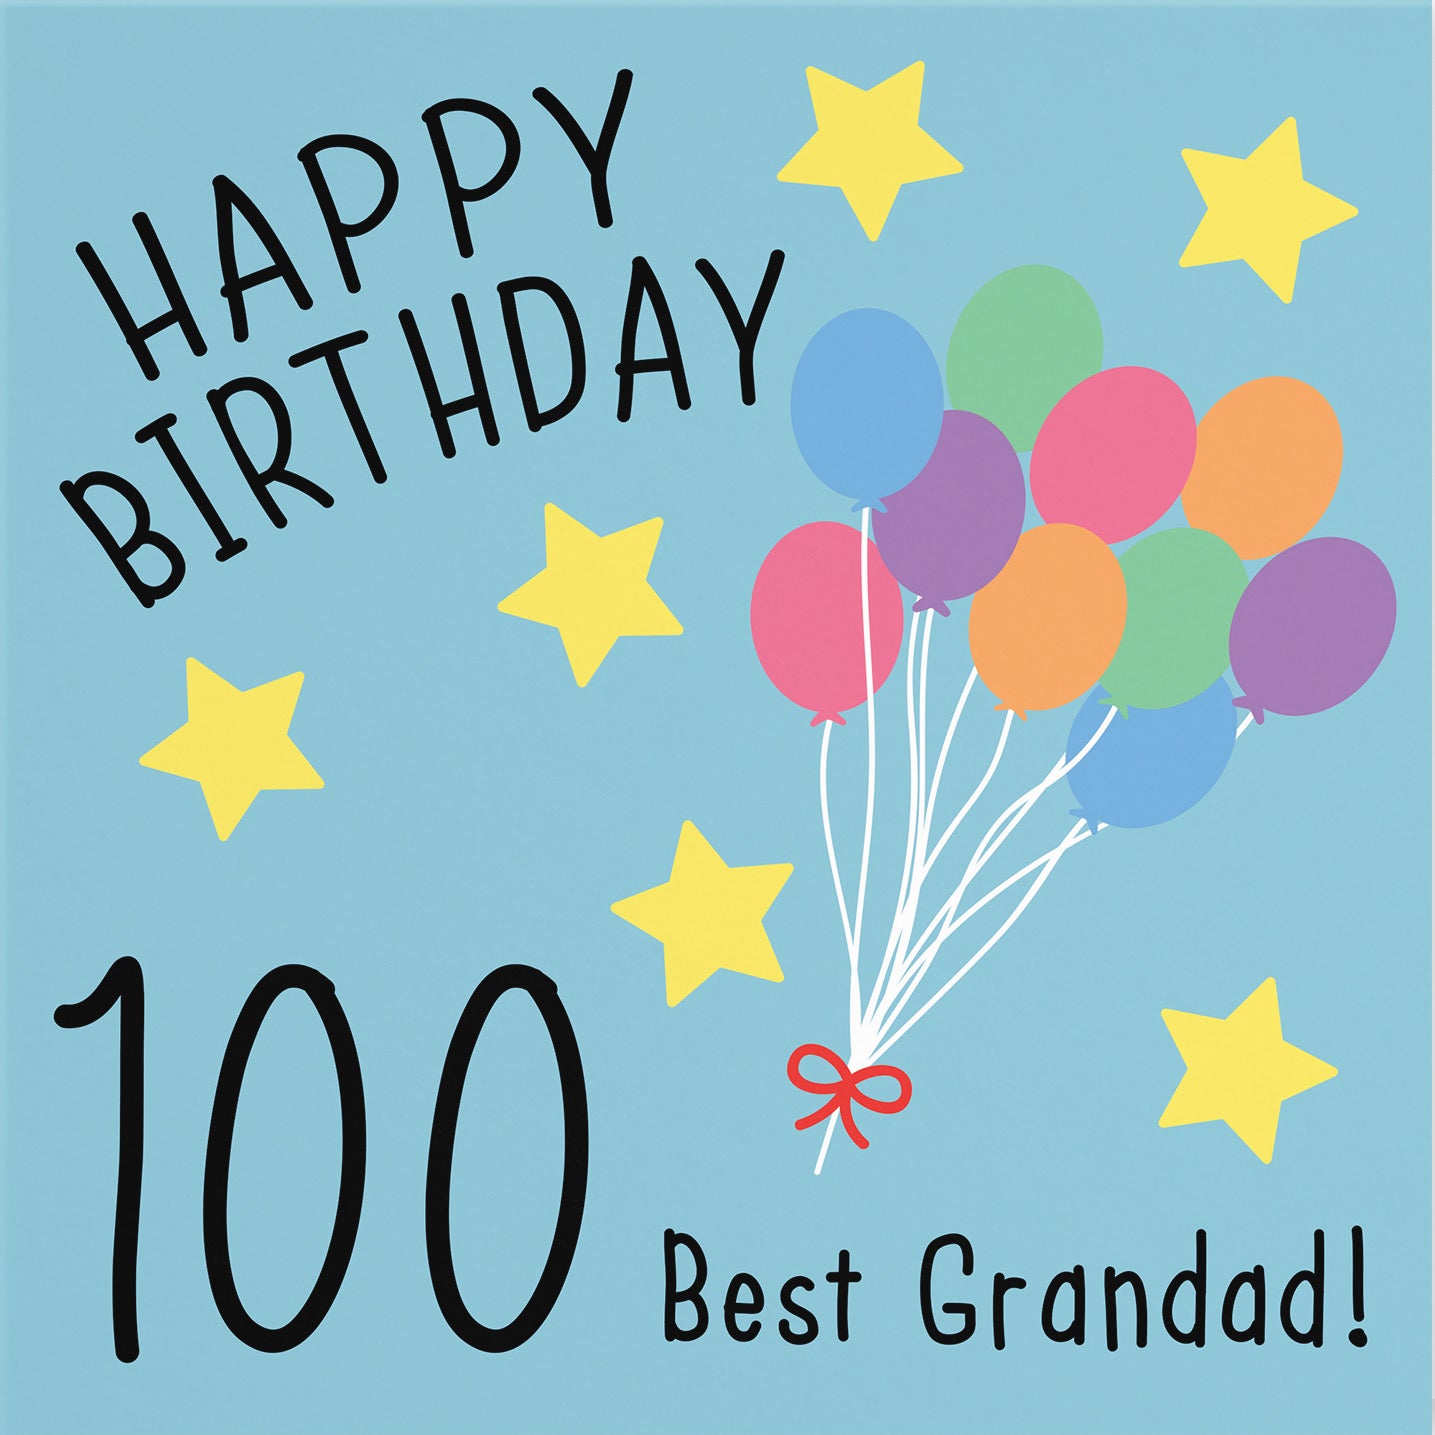 100th Grandad Birthday Card Original - Default Title (B07DCX4B2Y)